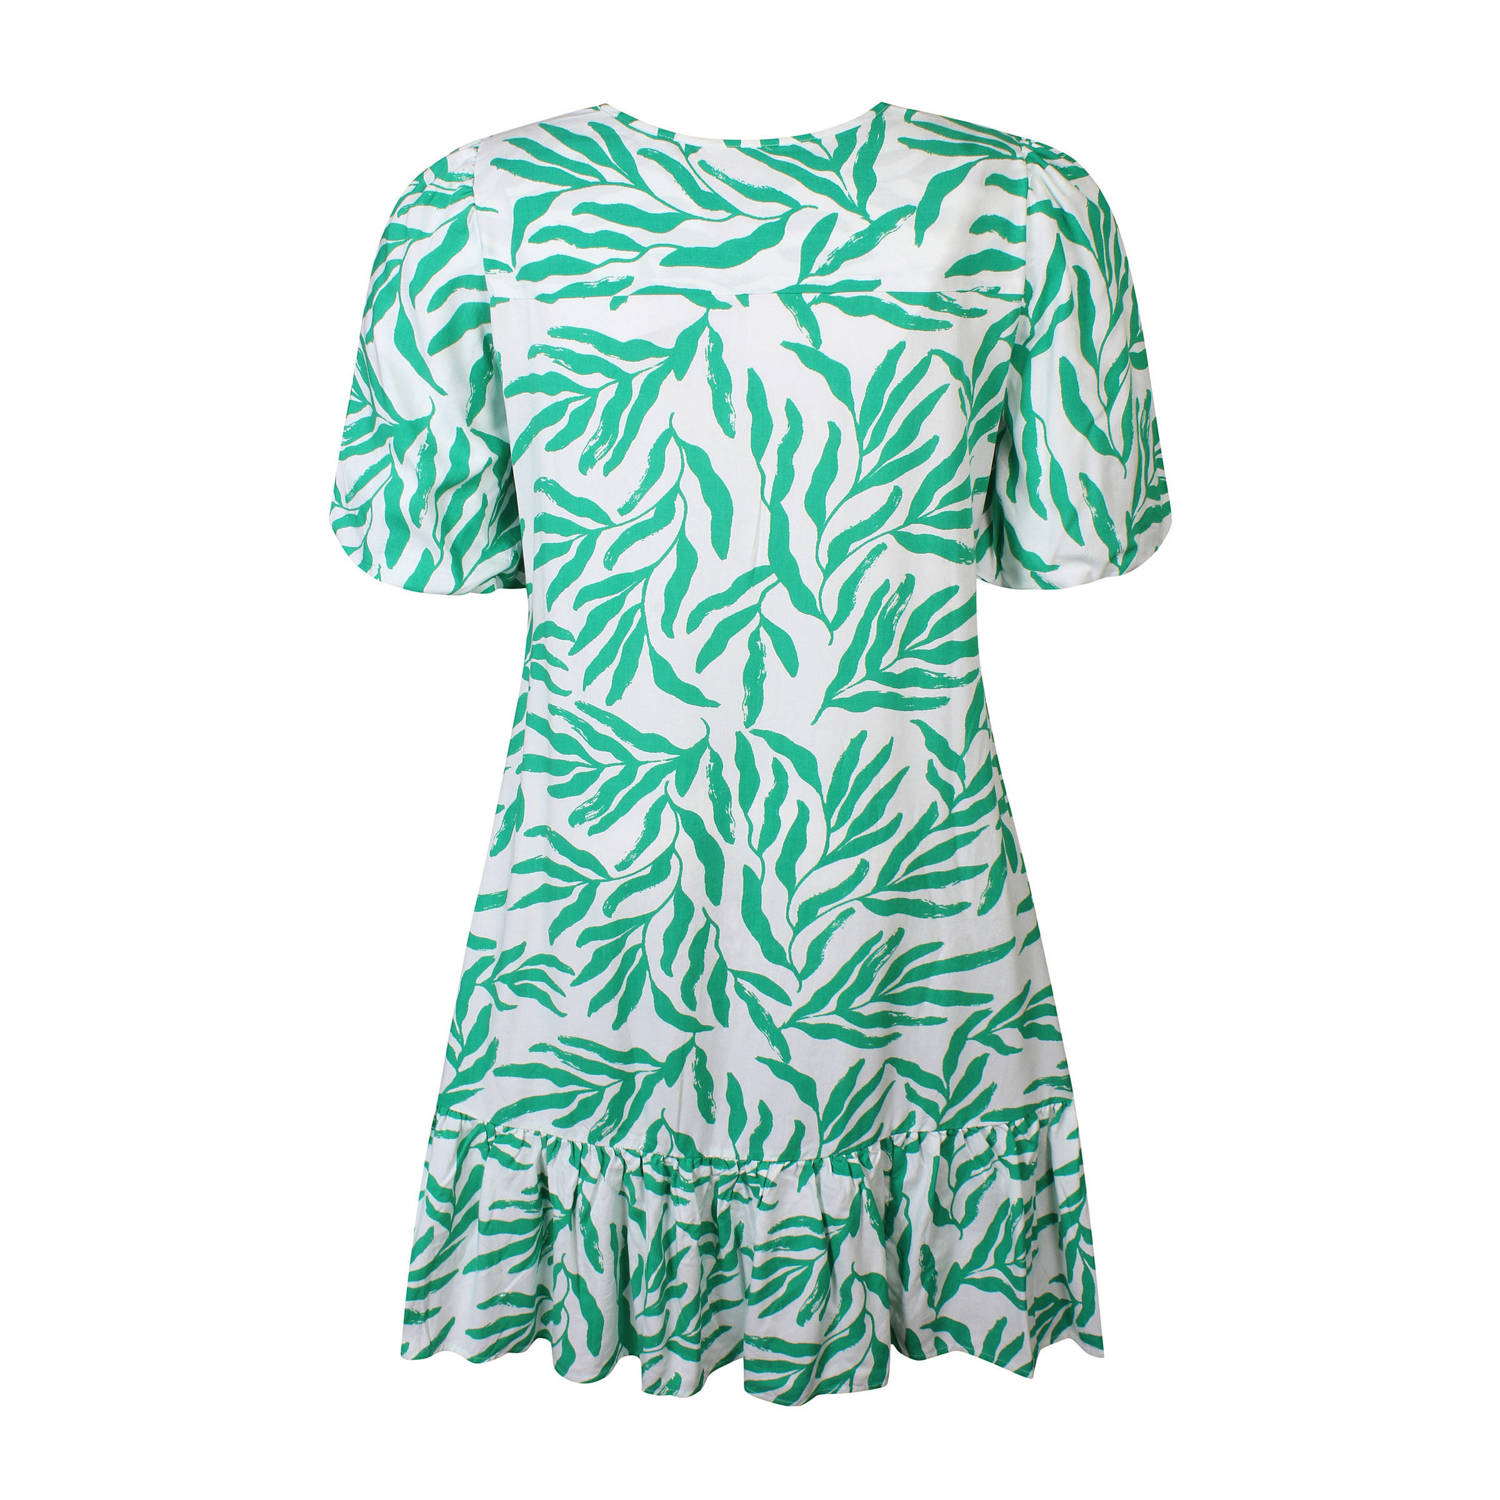 Zhenzi A-lijn jurk met all over print groen wit